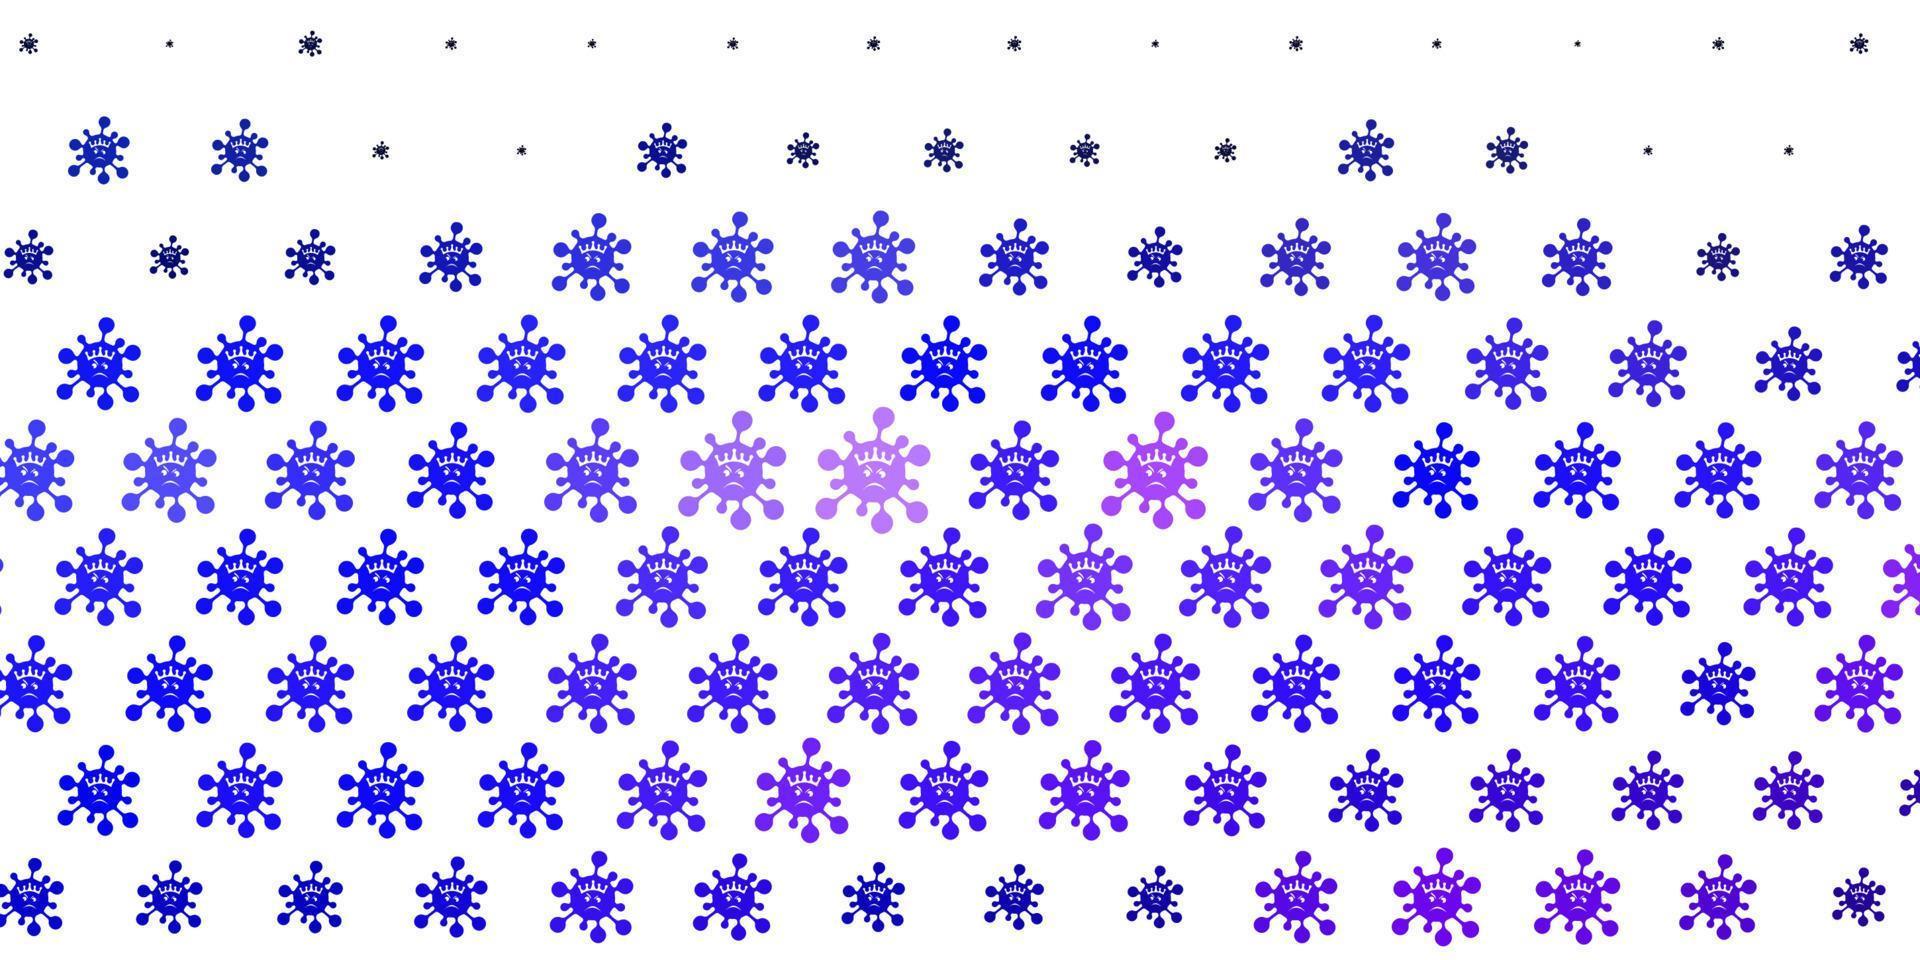 texture vecteur violet clair avec des symboles de la maladie.